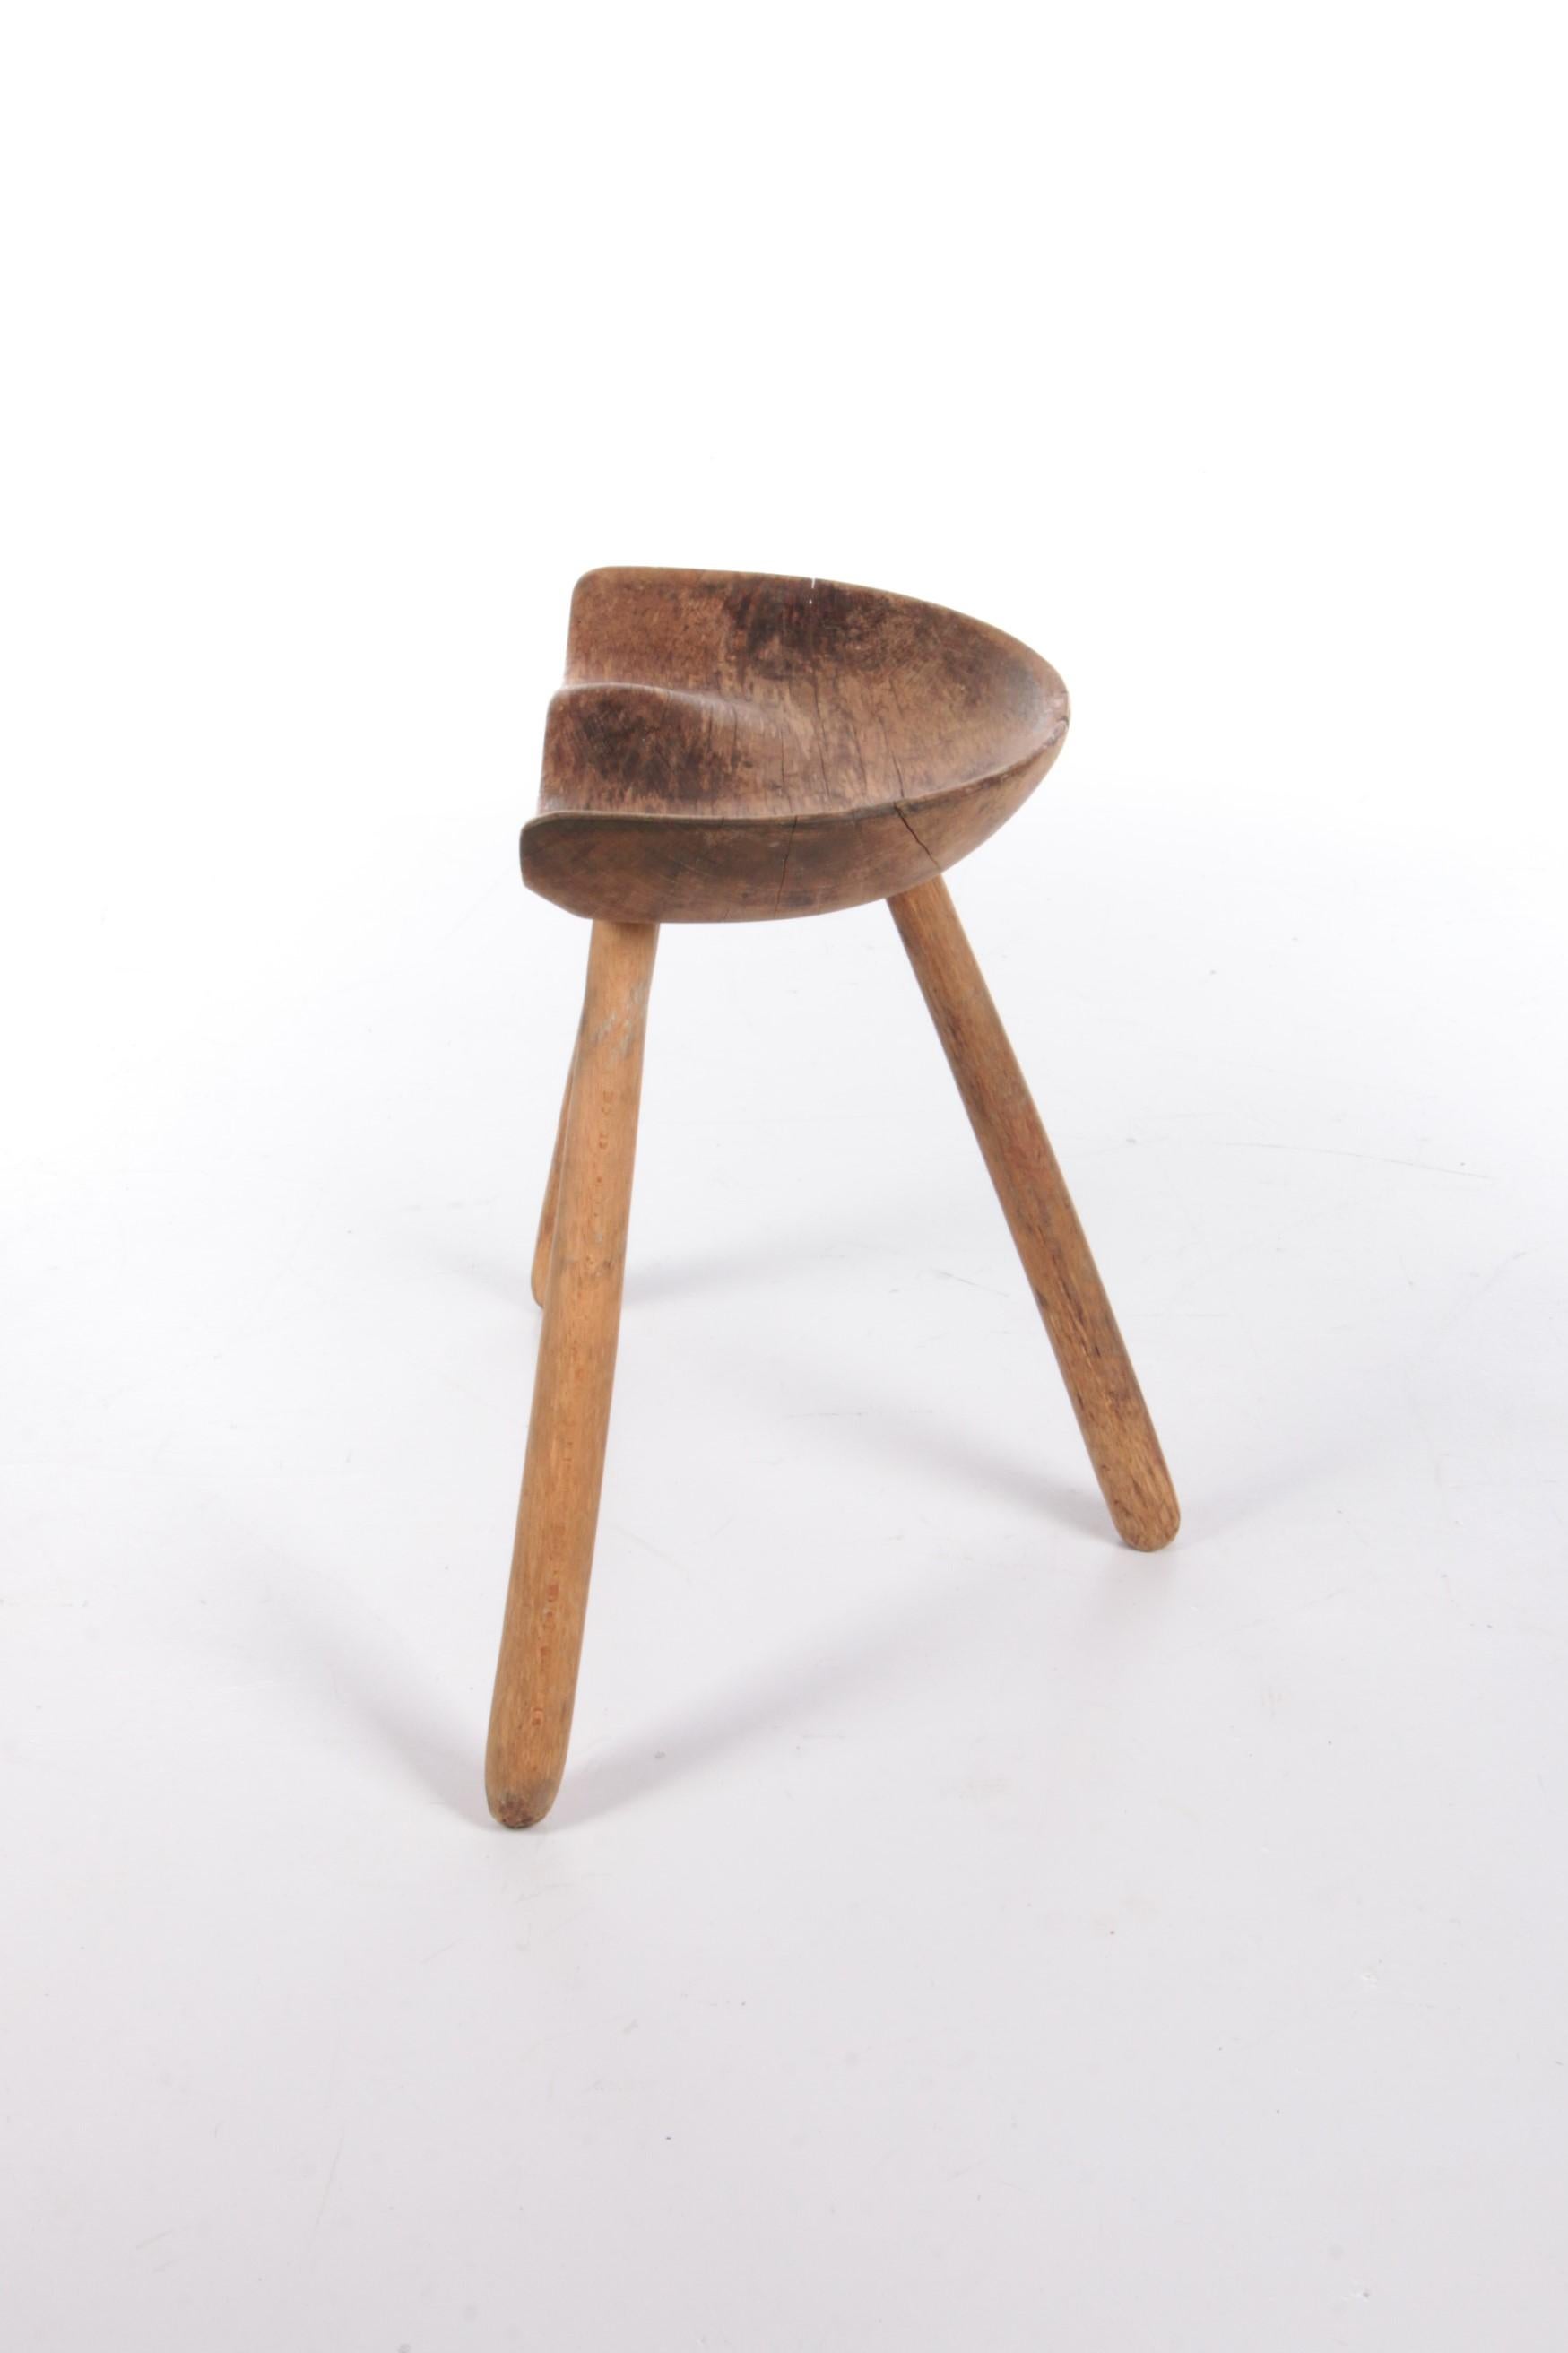 Danish Vintage Beech tripod stool by Mogens Lassen, 1950s Denmark.